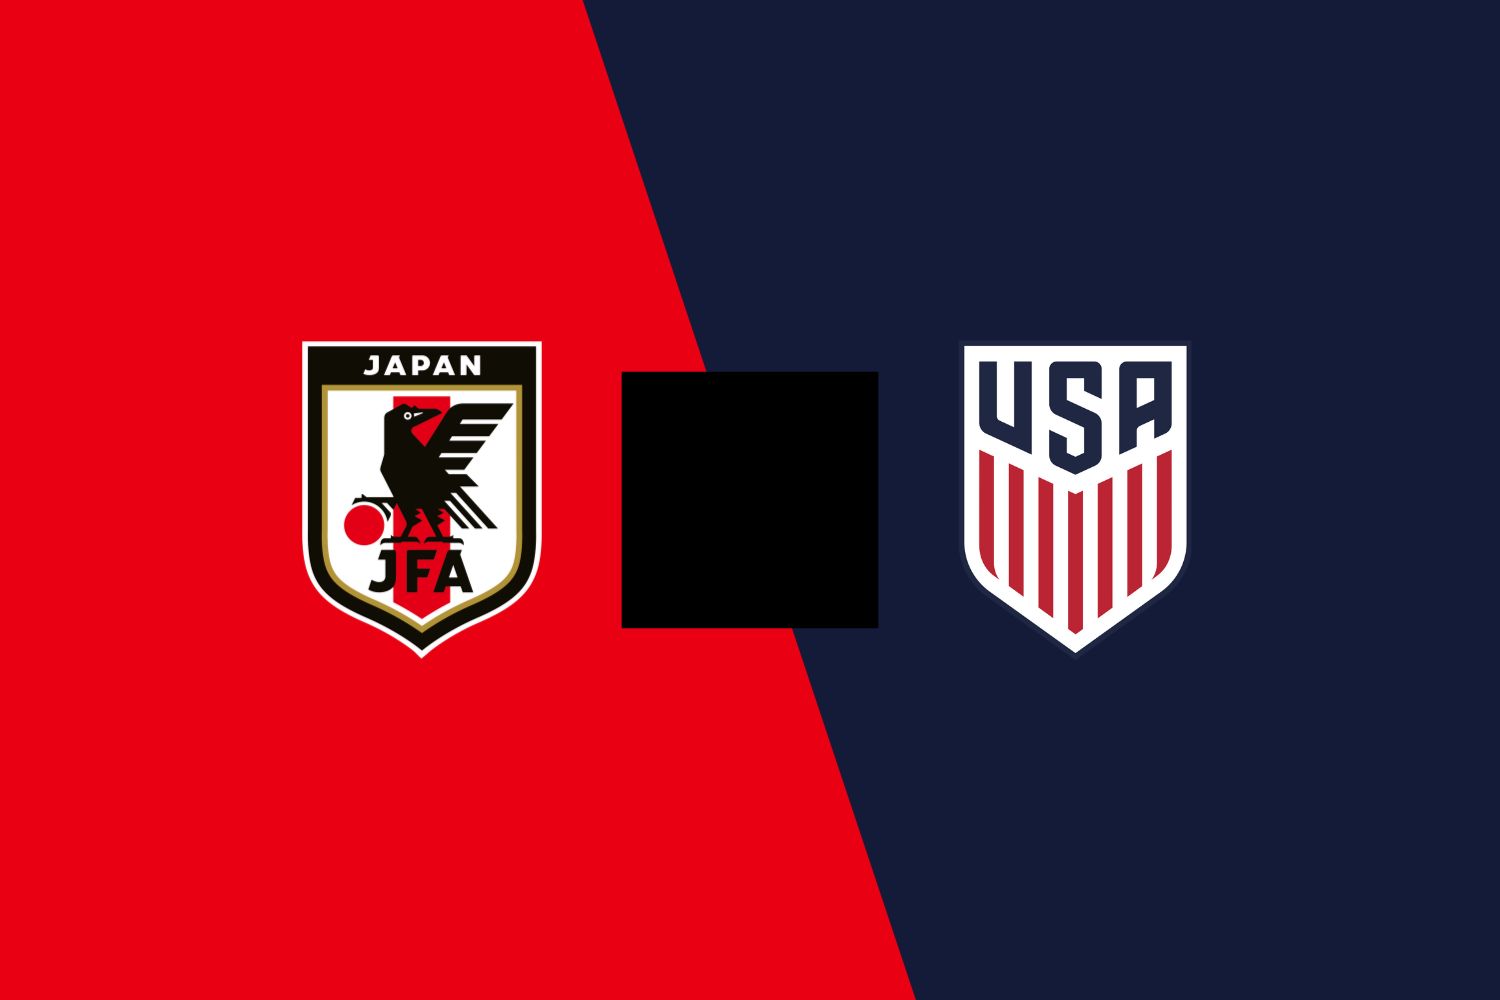 Japan vs USA preview & prediction